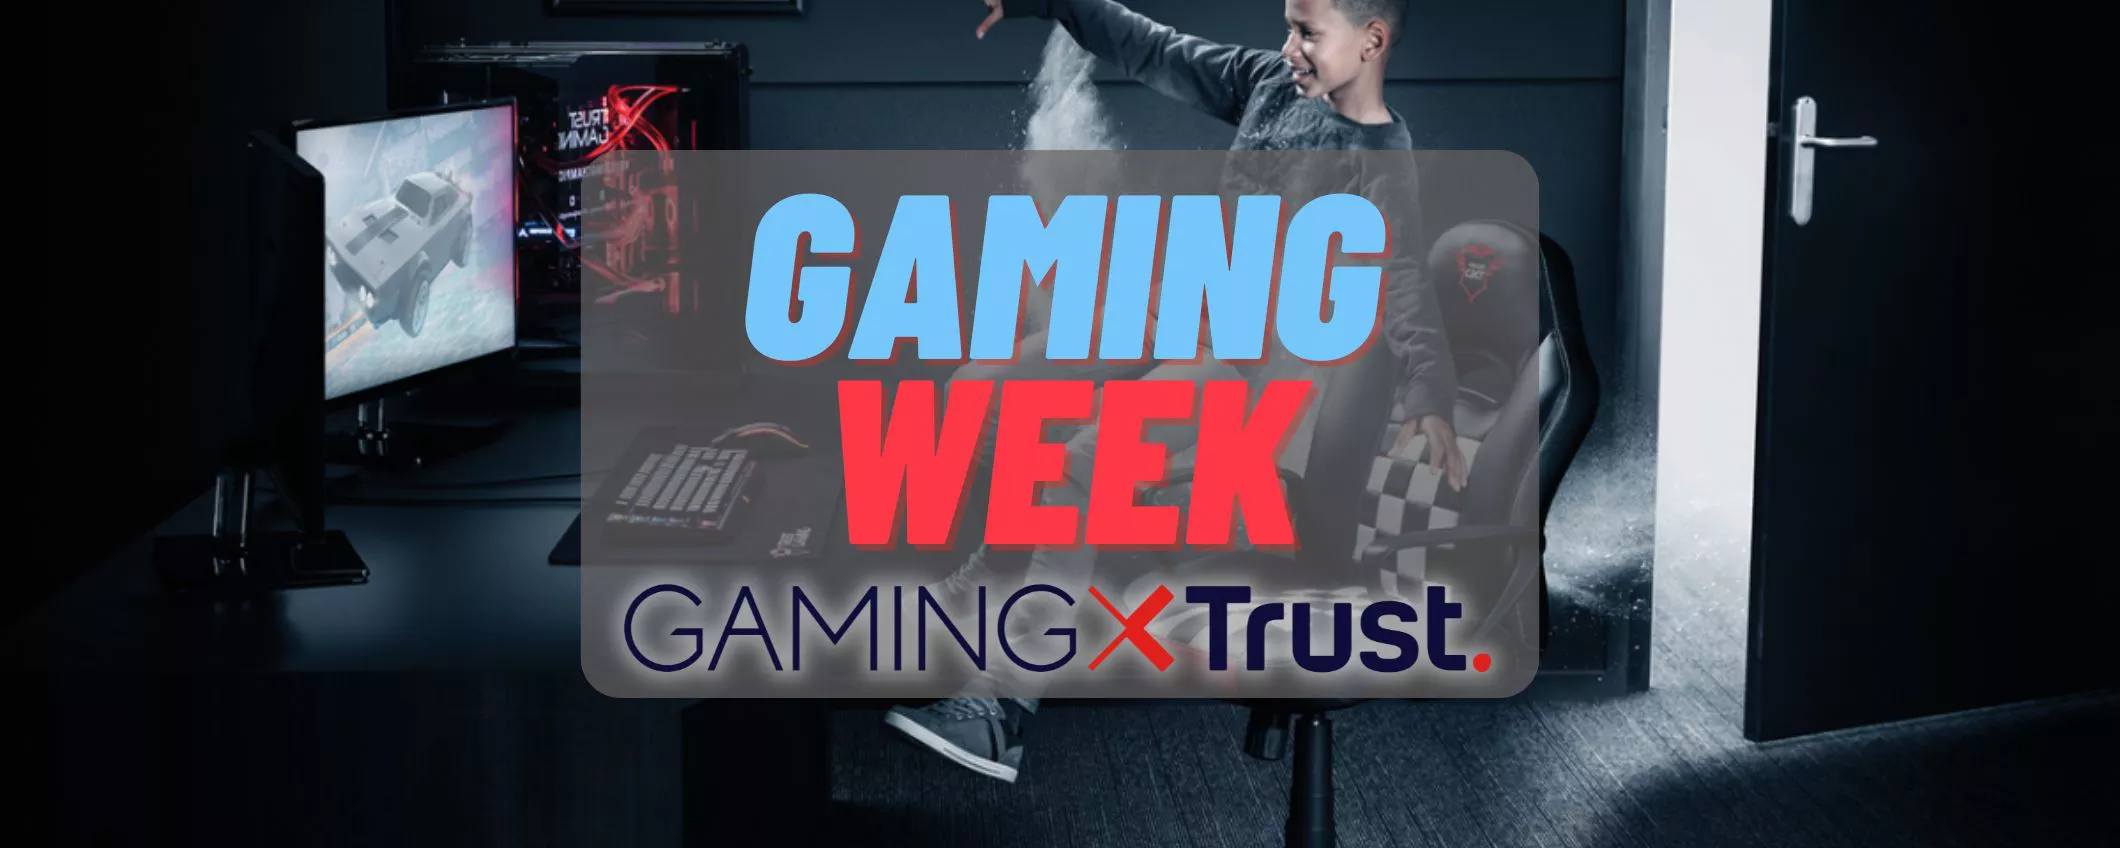 Trust: sconti e promozioni esclusive alla Gaming Week di Amazon